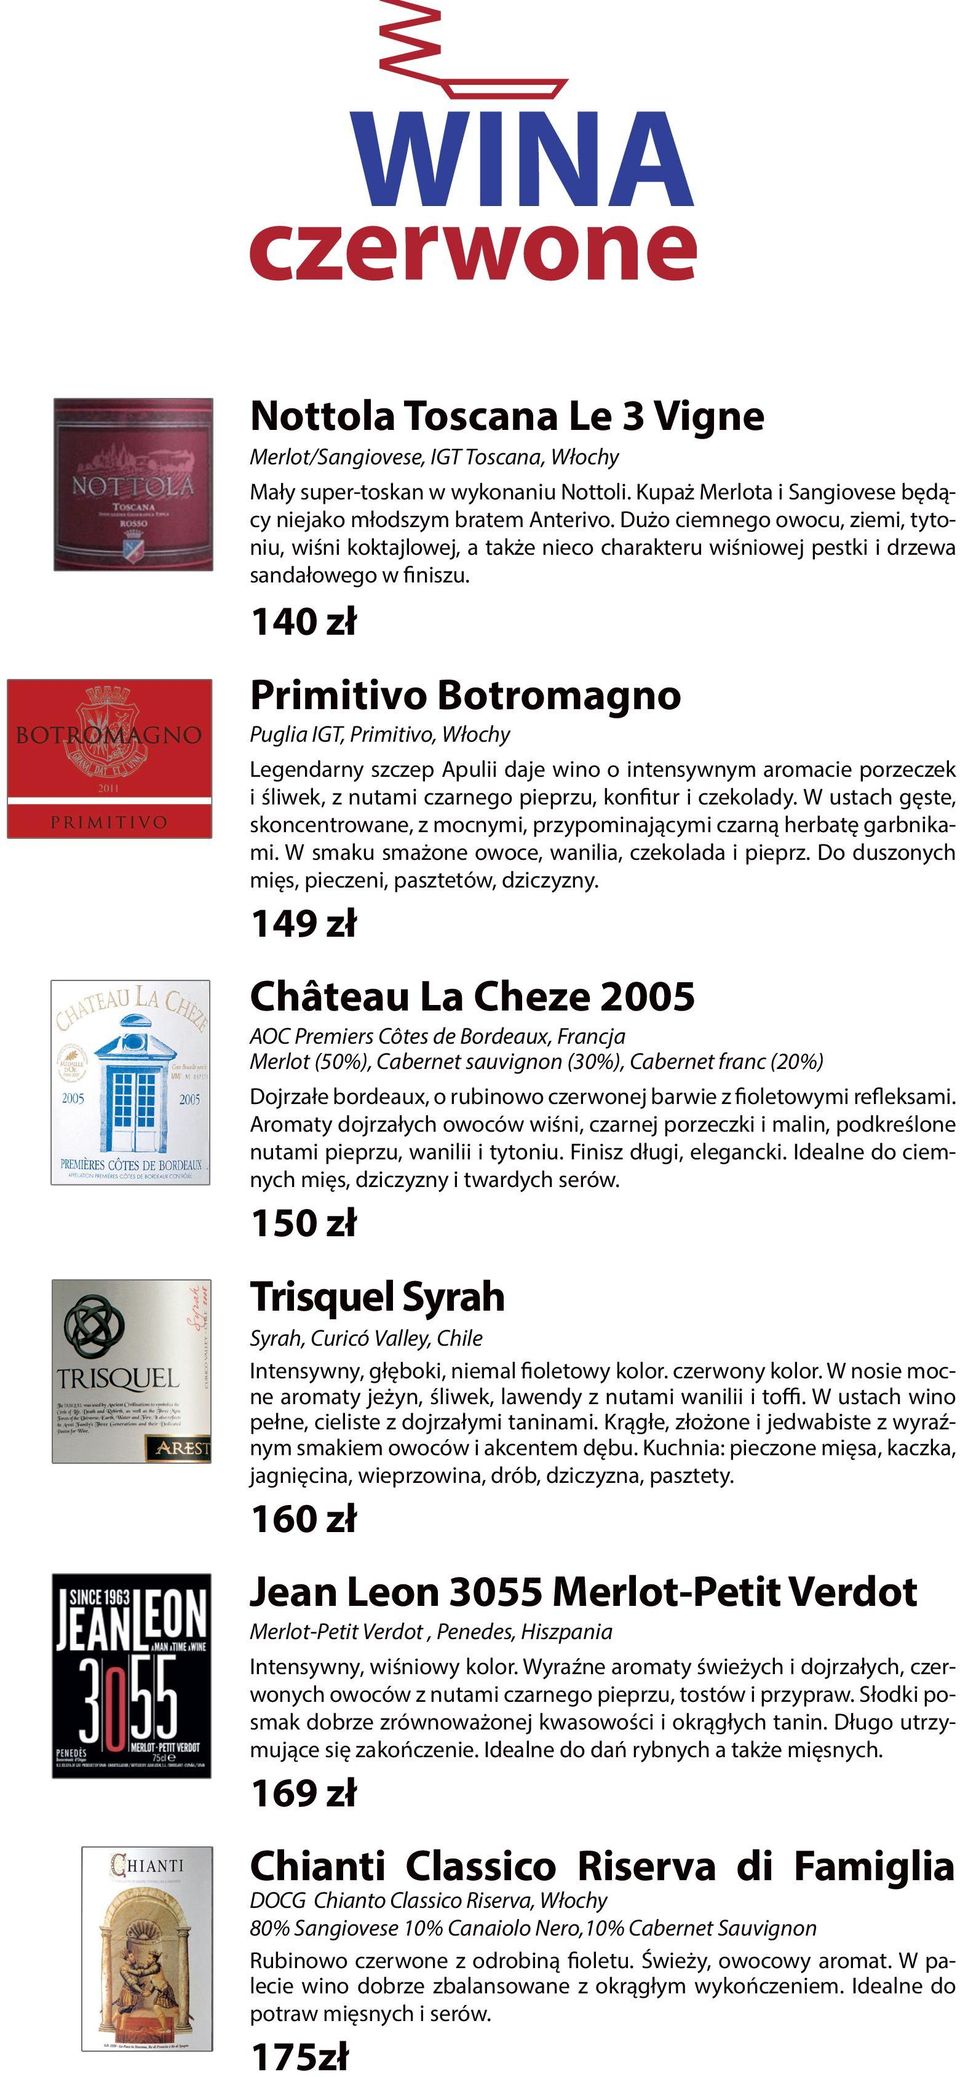 140 zł Primitivo Botromagno Puglia IGT, Primitivo, Włochy Legendarny szczep Apulii daje wino o intensywnym aromacie porzeczek i śliwek, z nutami czarnego pieprzu, konfitur i czekolady.